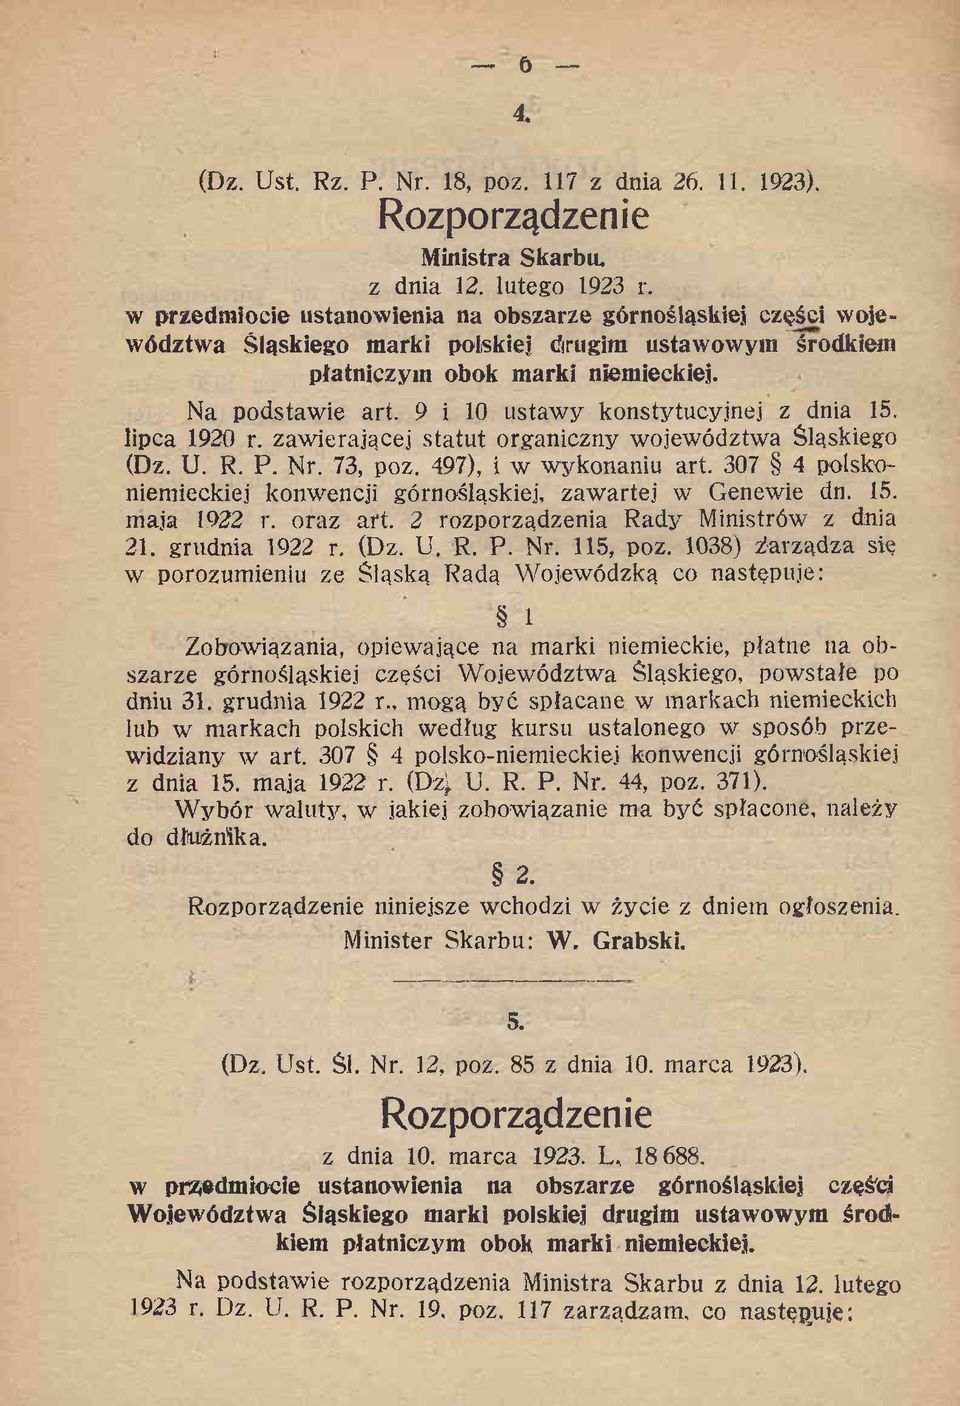 9 i 10 ustawy konstytucyjnej z dnia 15. lipca 1920 r. zawierającej statut organiczny województwa Śląskiego (Dz. U. R. P. Nr. 73, poz. 497), i w wykonaniu art.